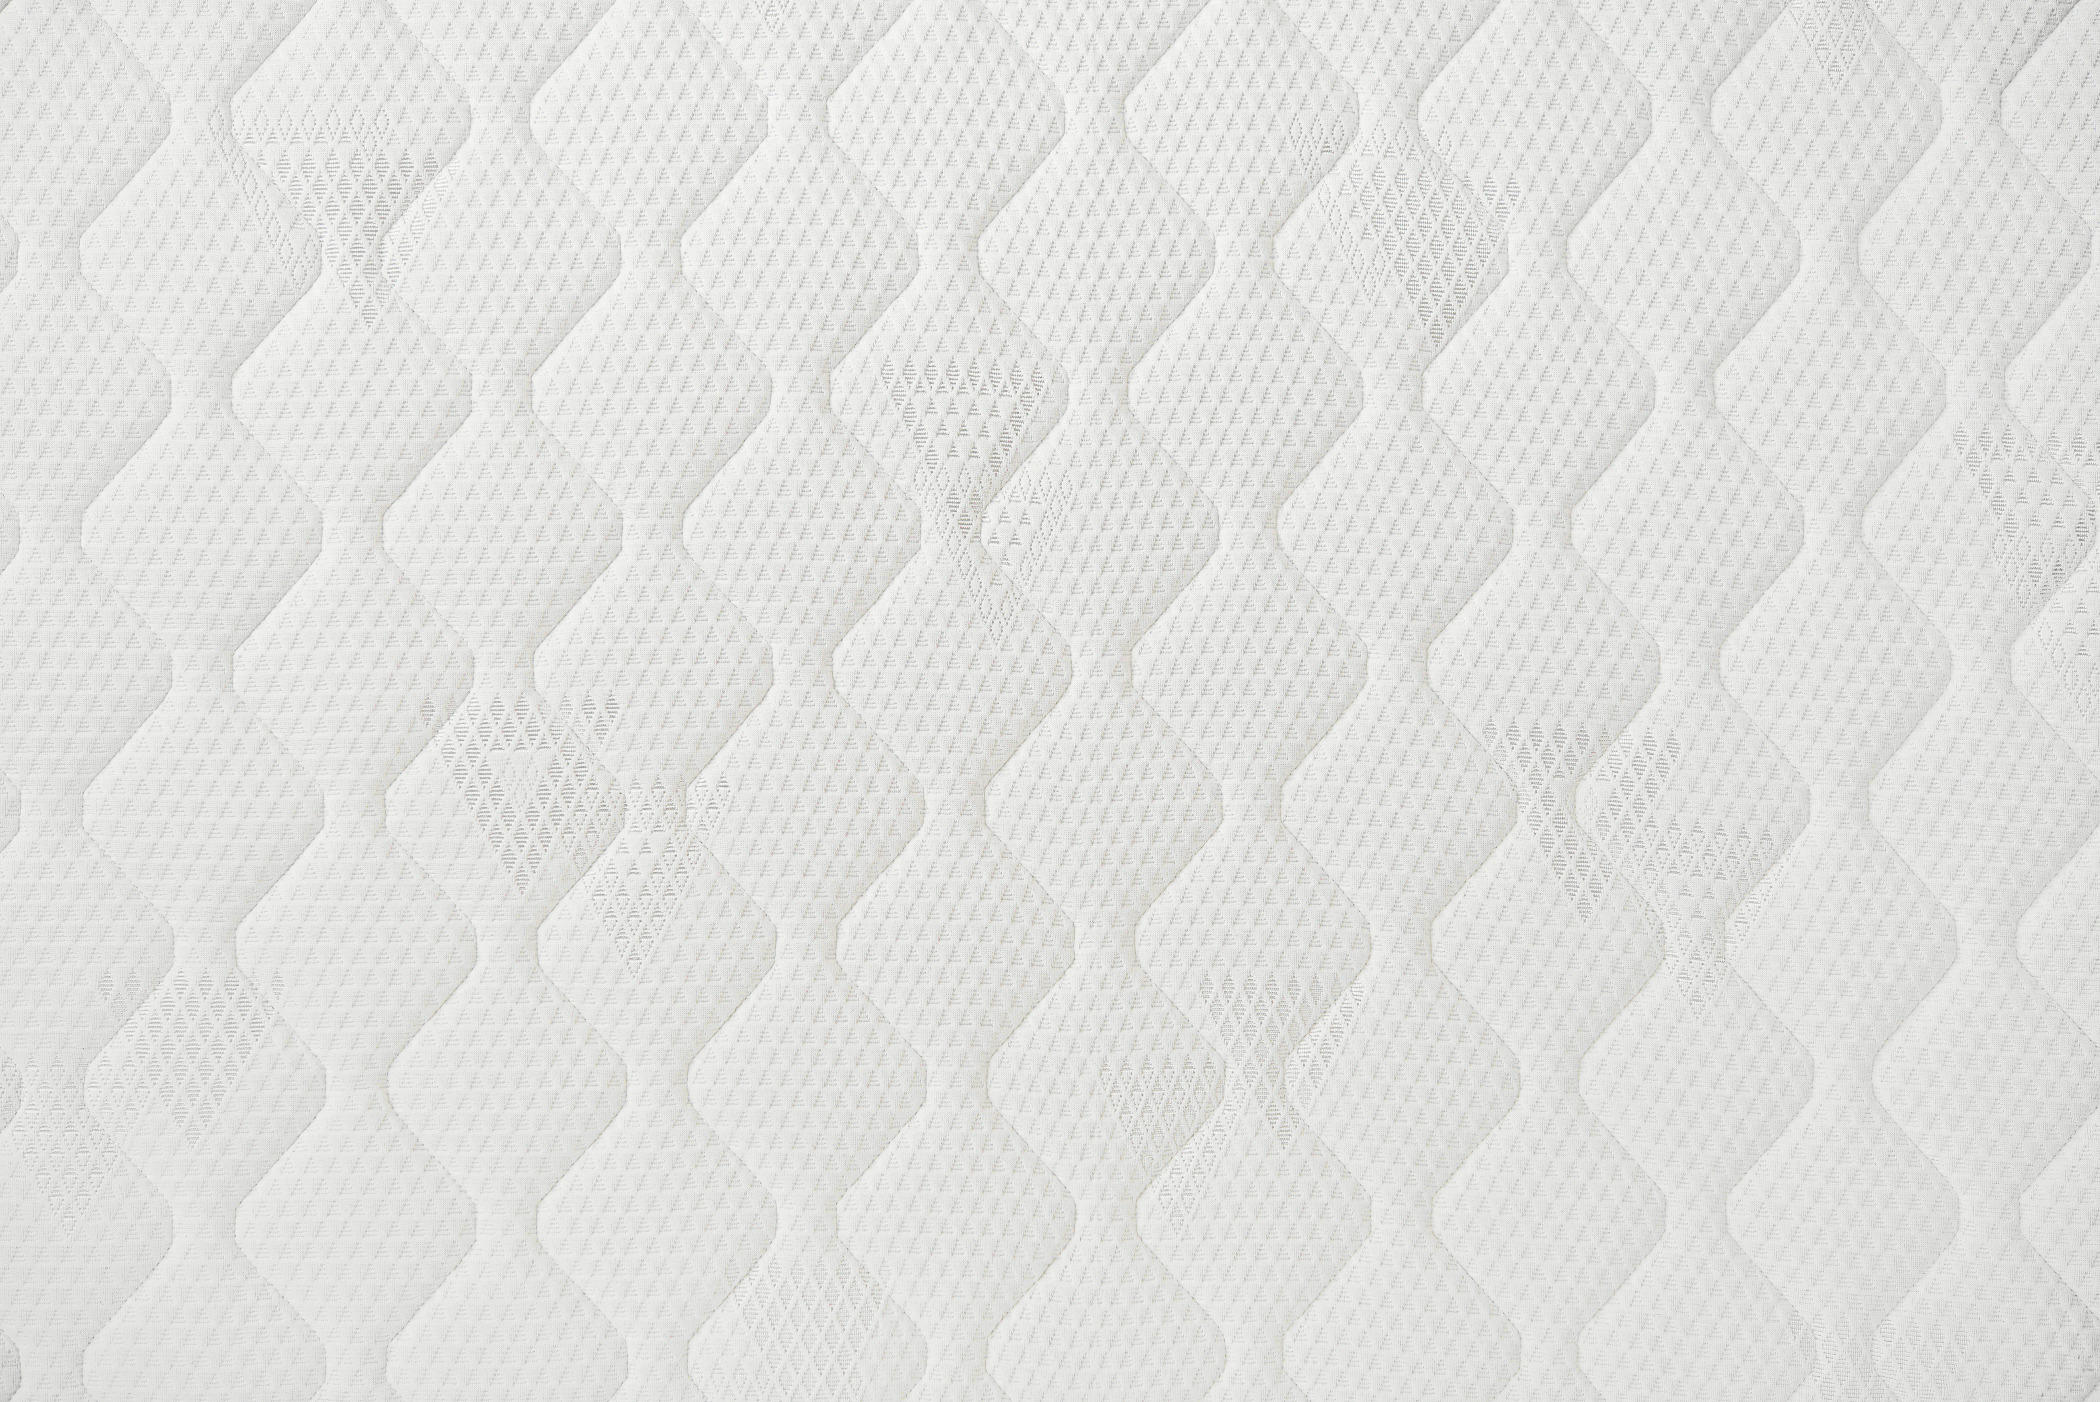 MATRACE, 120/200 cm - bílá, Basics, textil (120/200cm) - Sleeptex